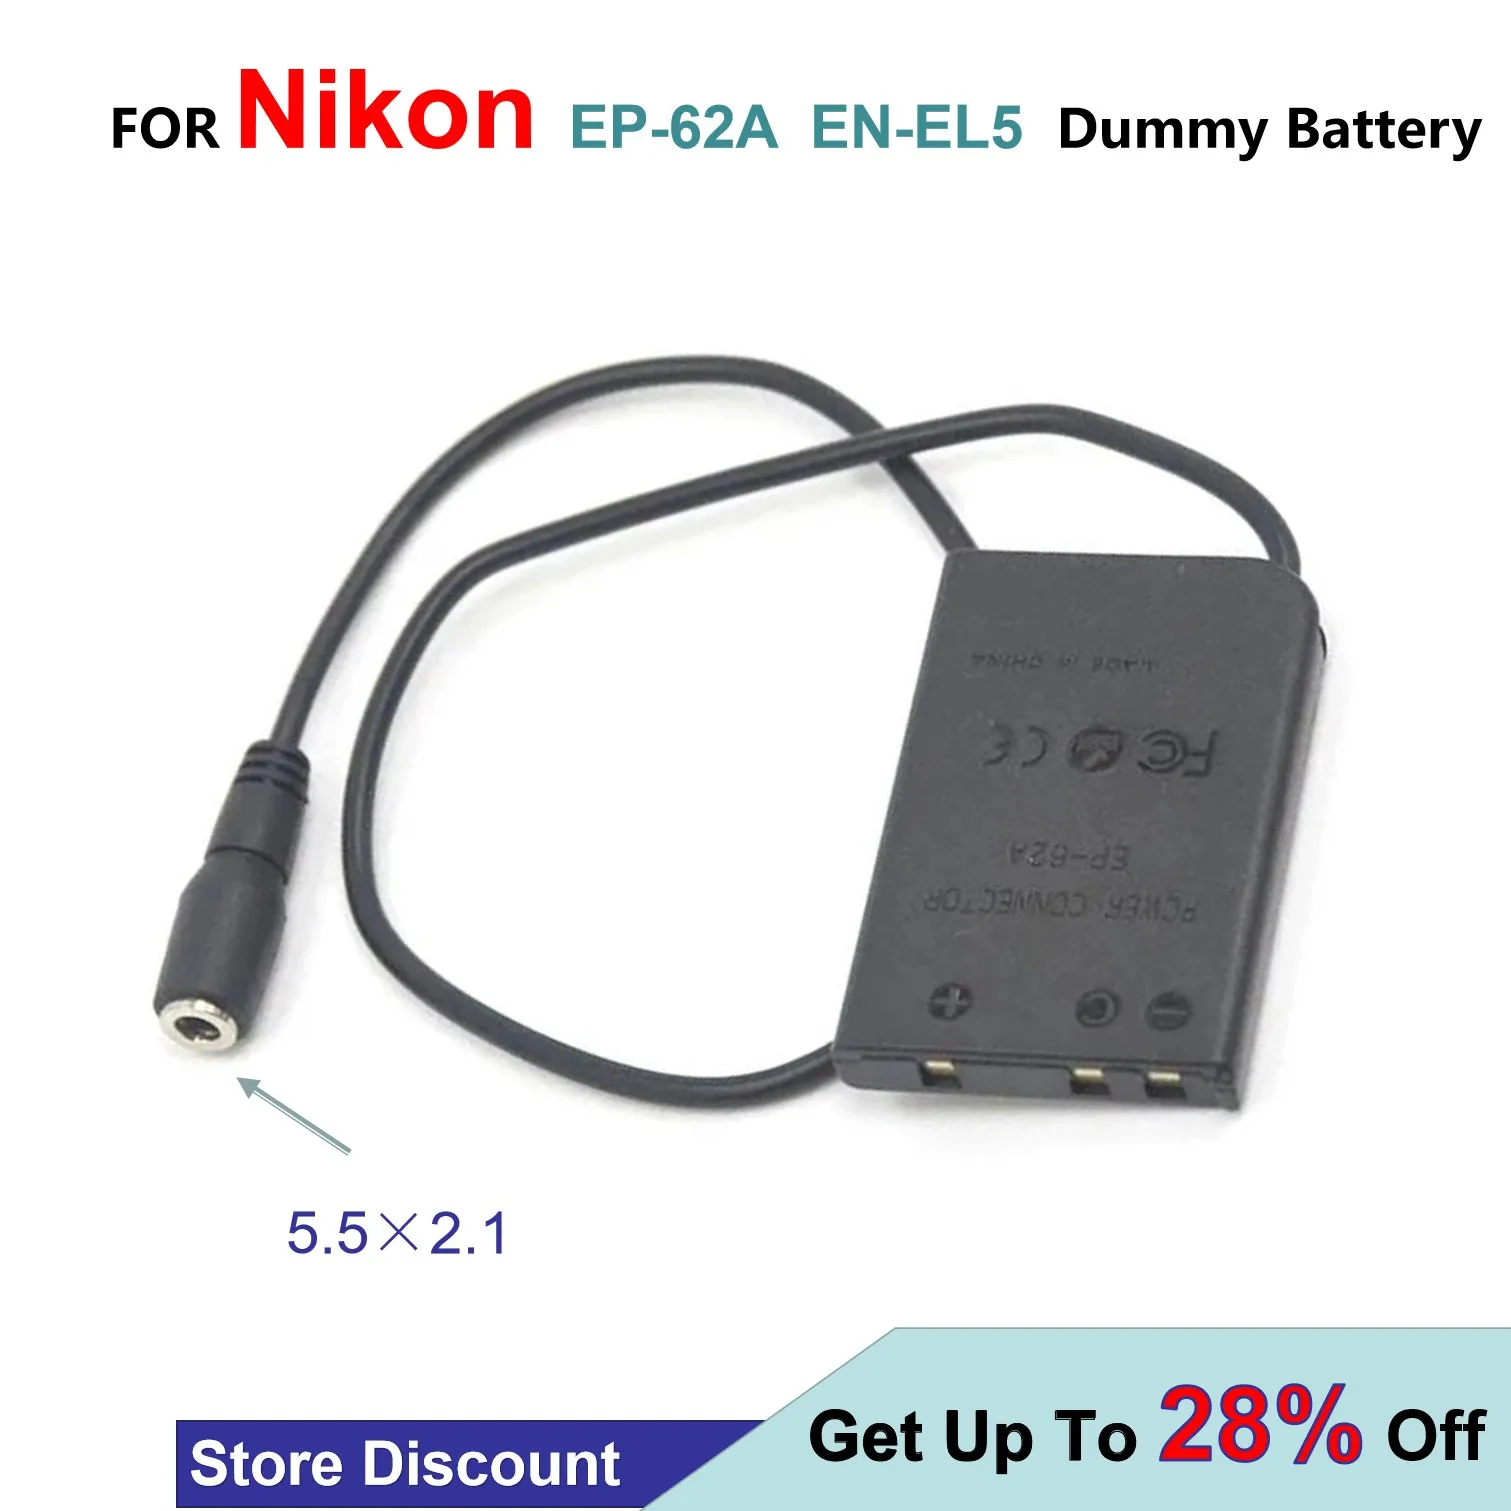 

EN-EL5 ENEL5 Dummy Battery EP-62A DC Coupler Fit Power Charger For Nikon Coolpix 3700 4200 5200 5900 7900 P3 P80 P90 P100 P5000